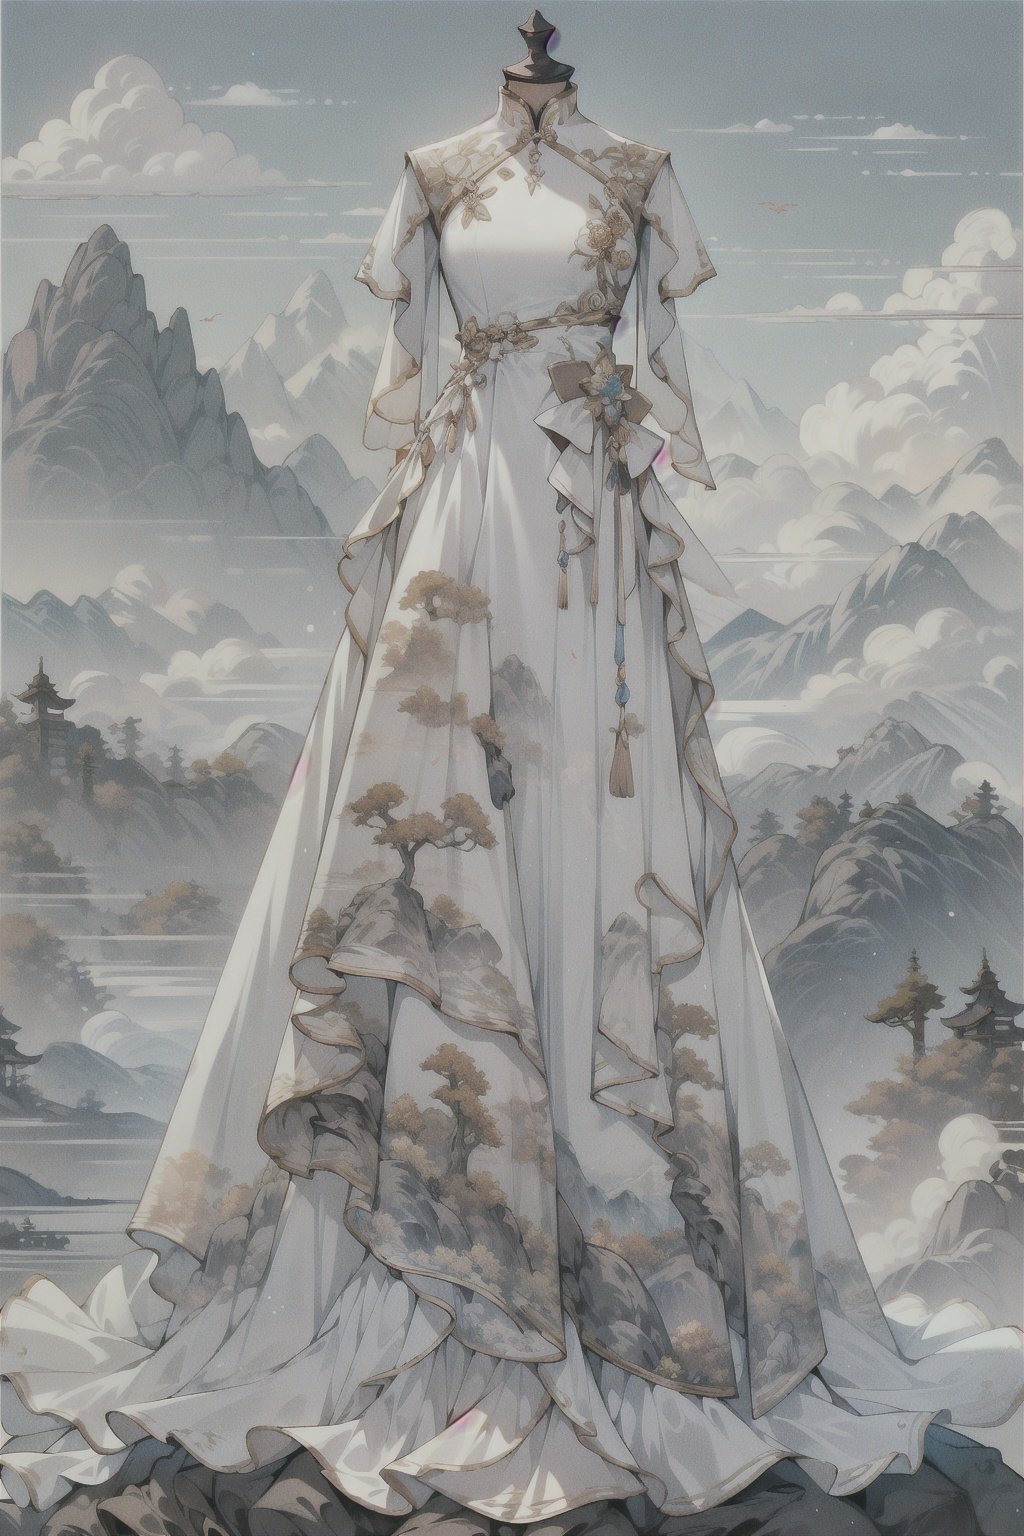  1girl,1 girl,dress,cloud,mountain, outdoors, pillar, standing, statue, white dress